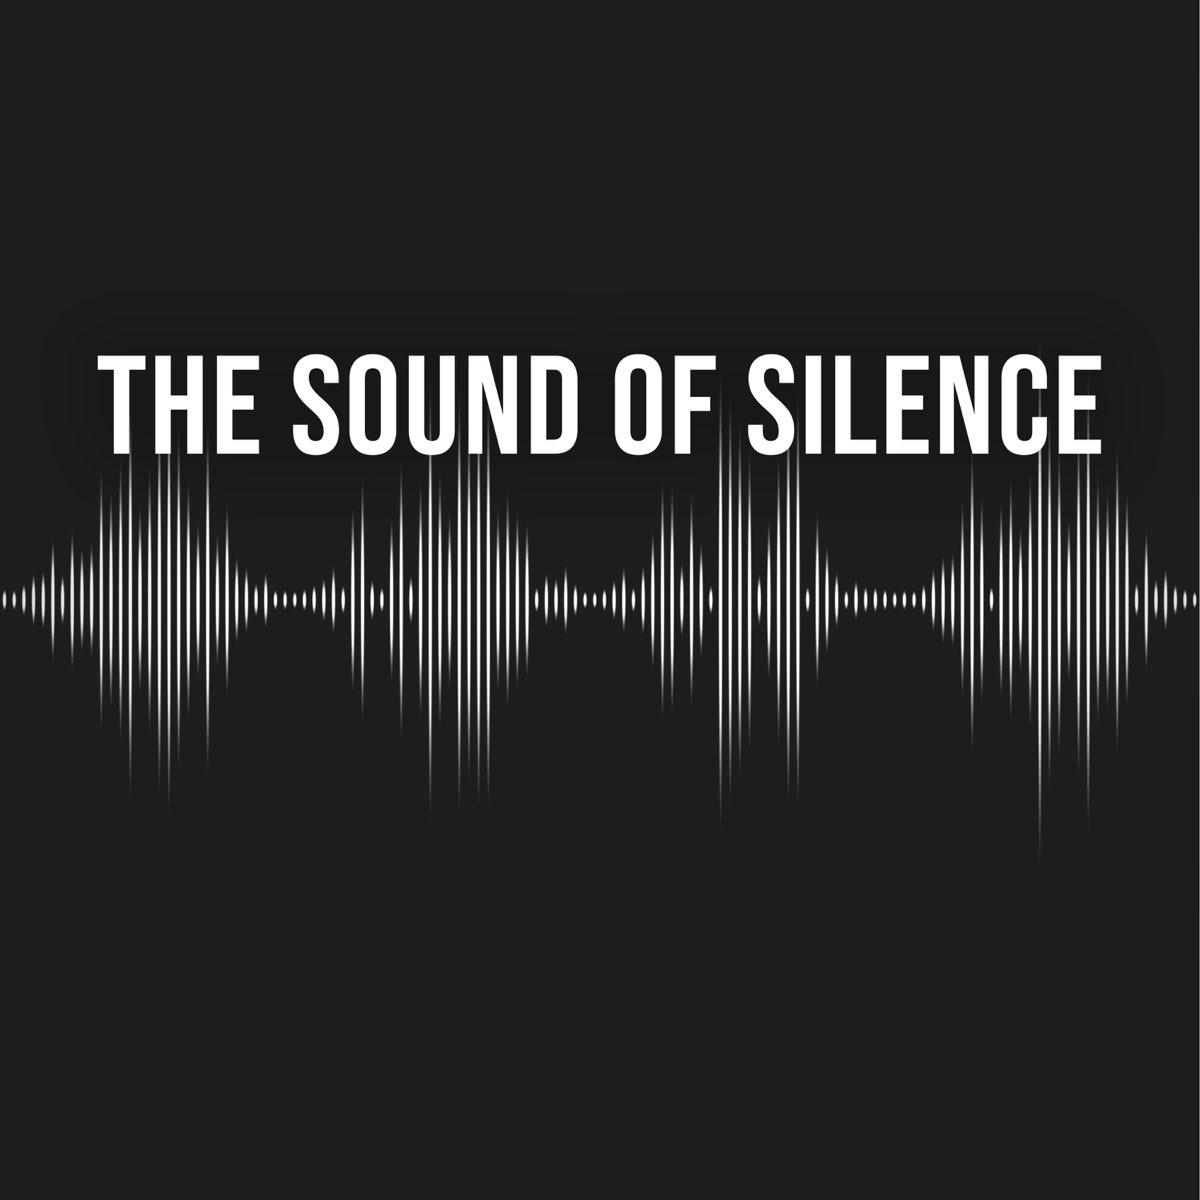 Sound of Silence. Sound of Silence альбом. Альбомы the Sound of Silence 2014. The sound of silence слушать